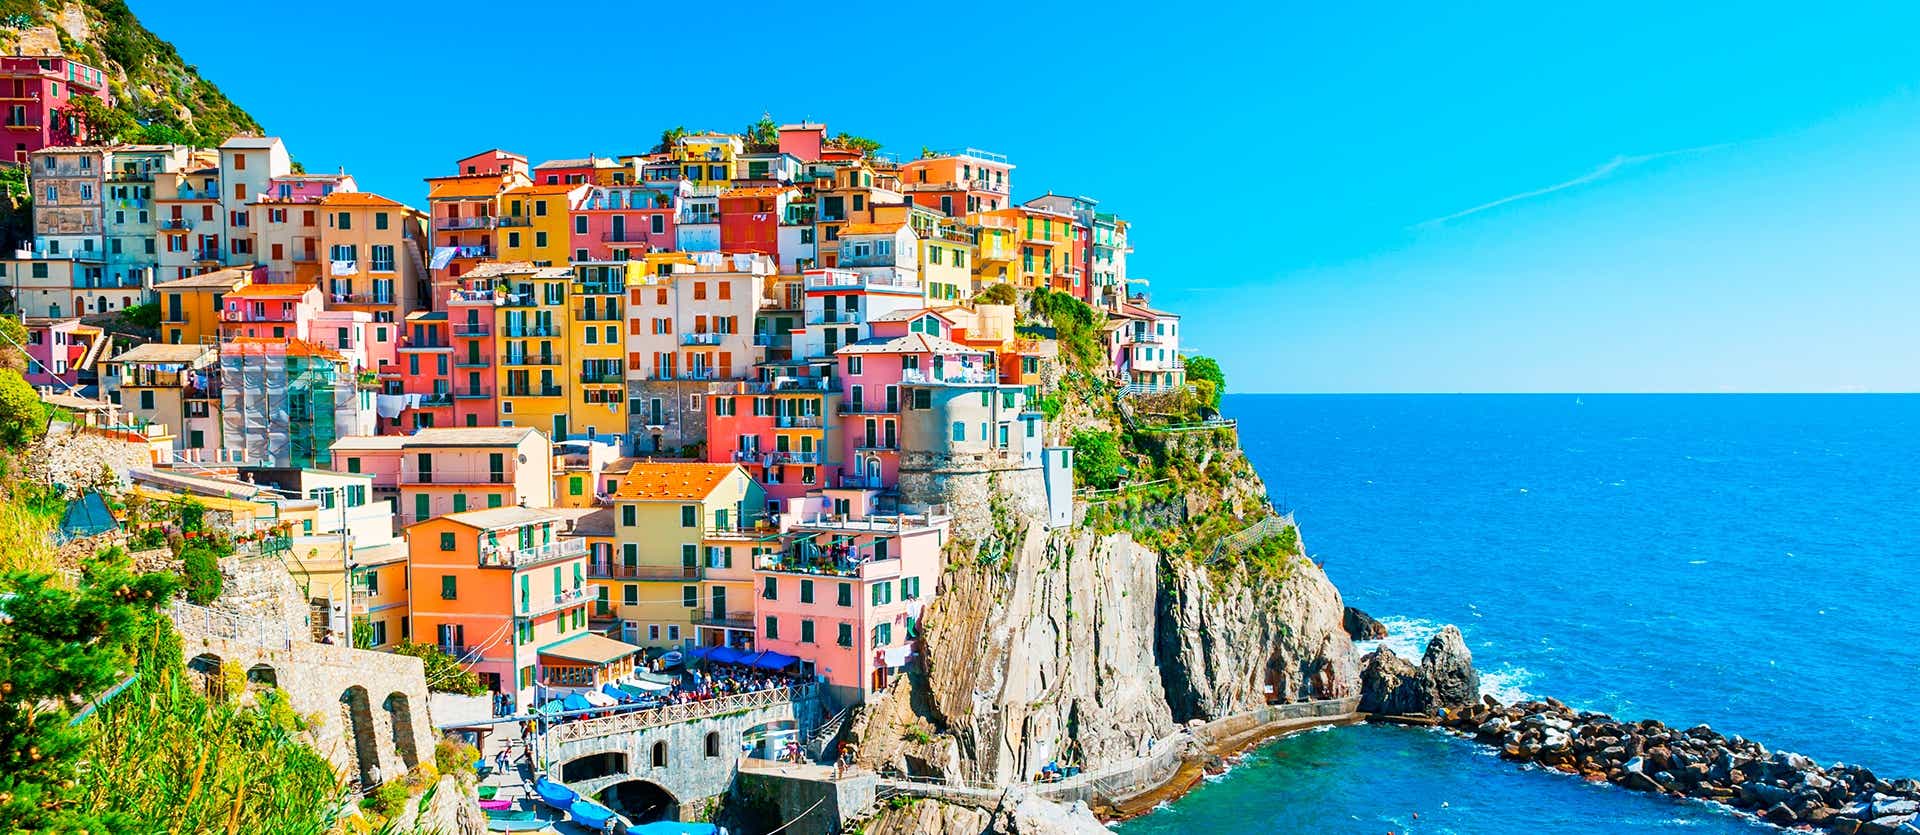 Cinque Terre <span class="iconos separador"></span> Riviera italiana